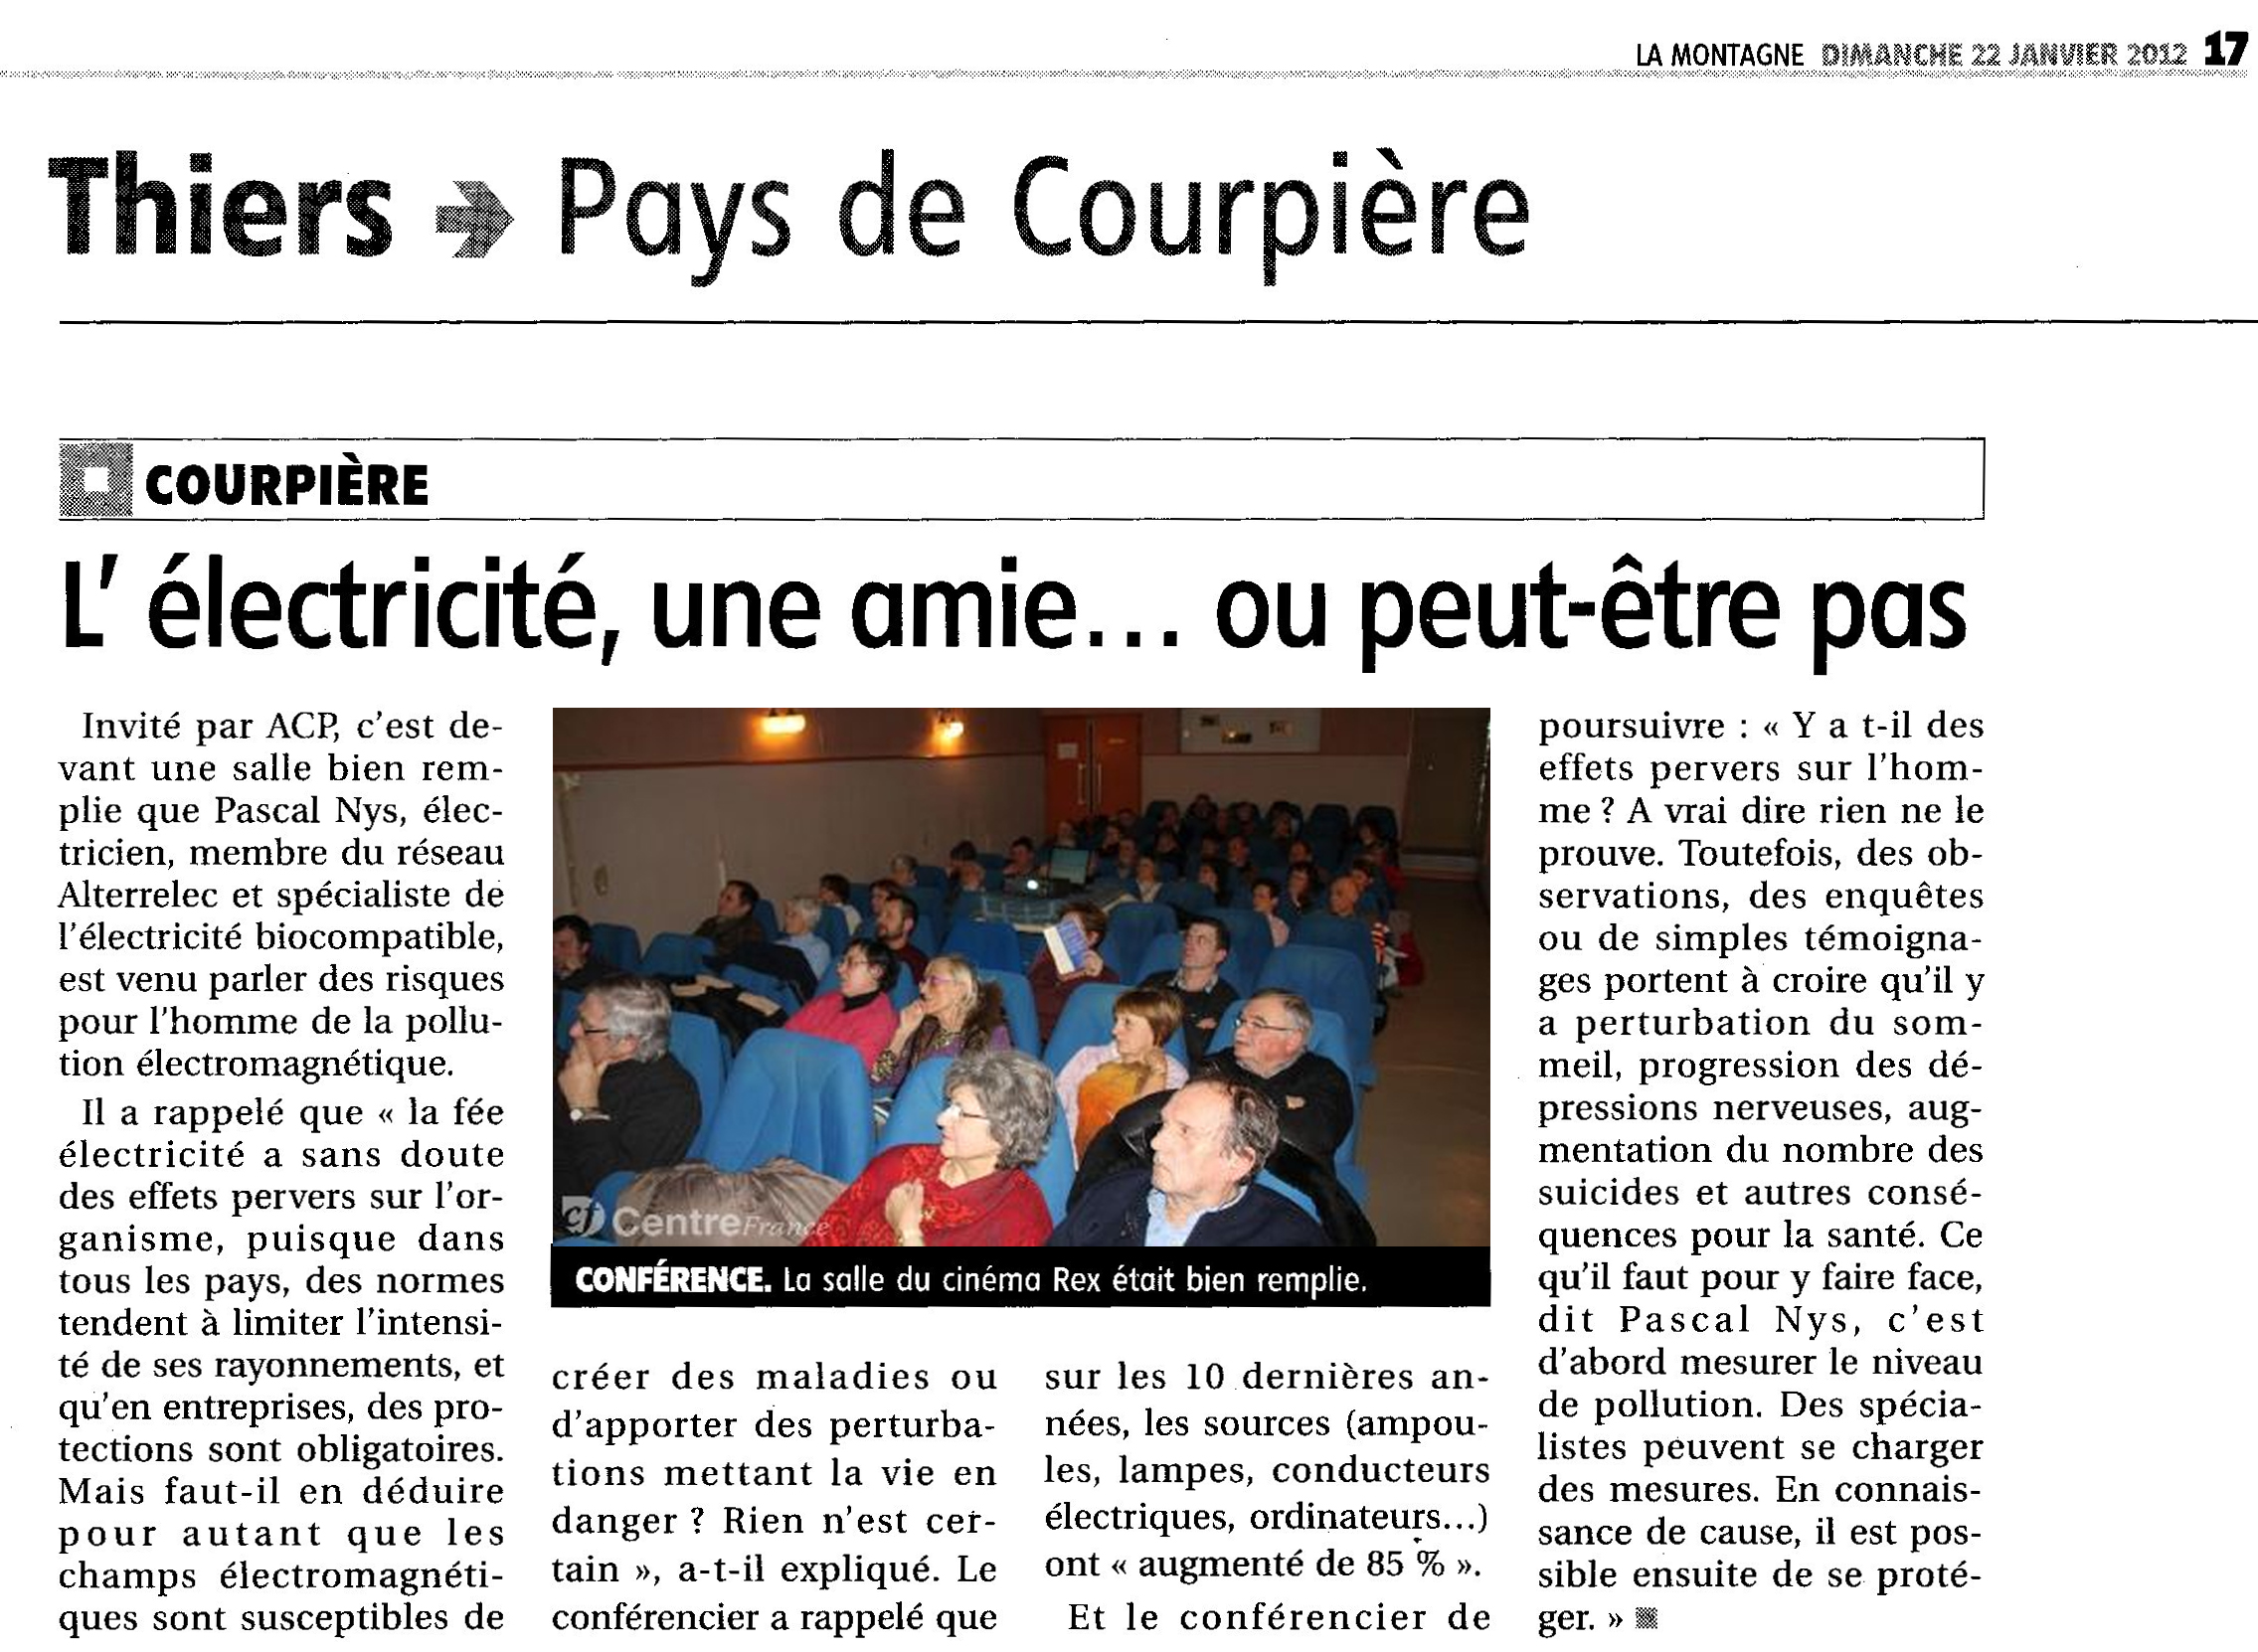 Article LA MONTAGNE 22-01-2012